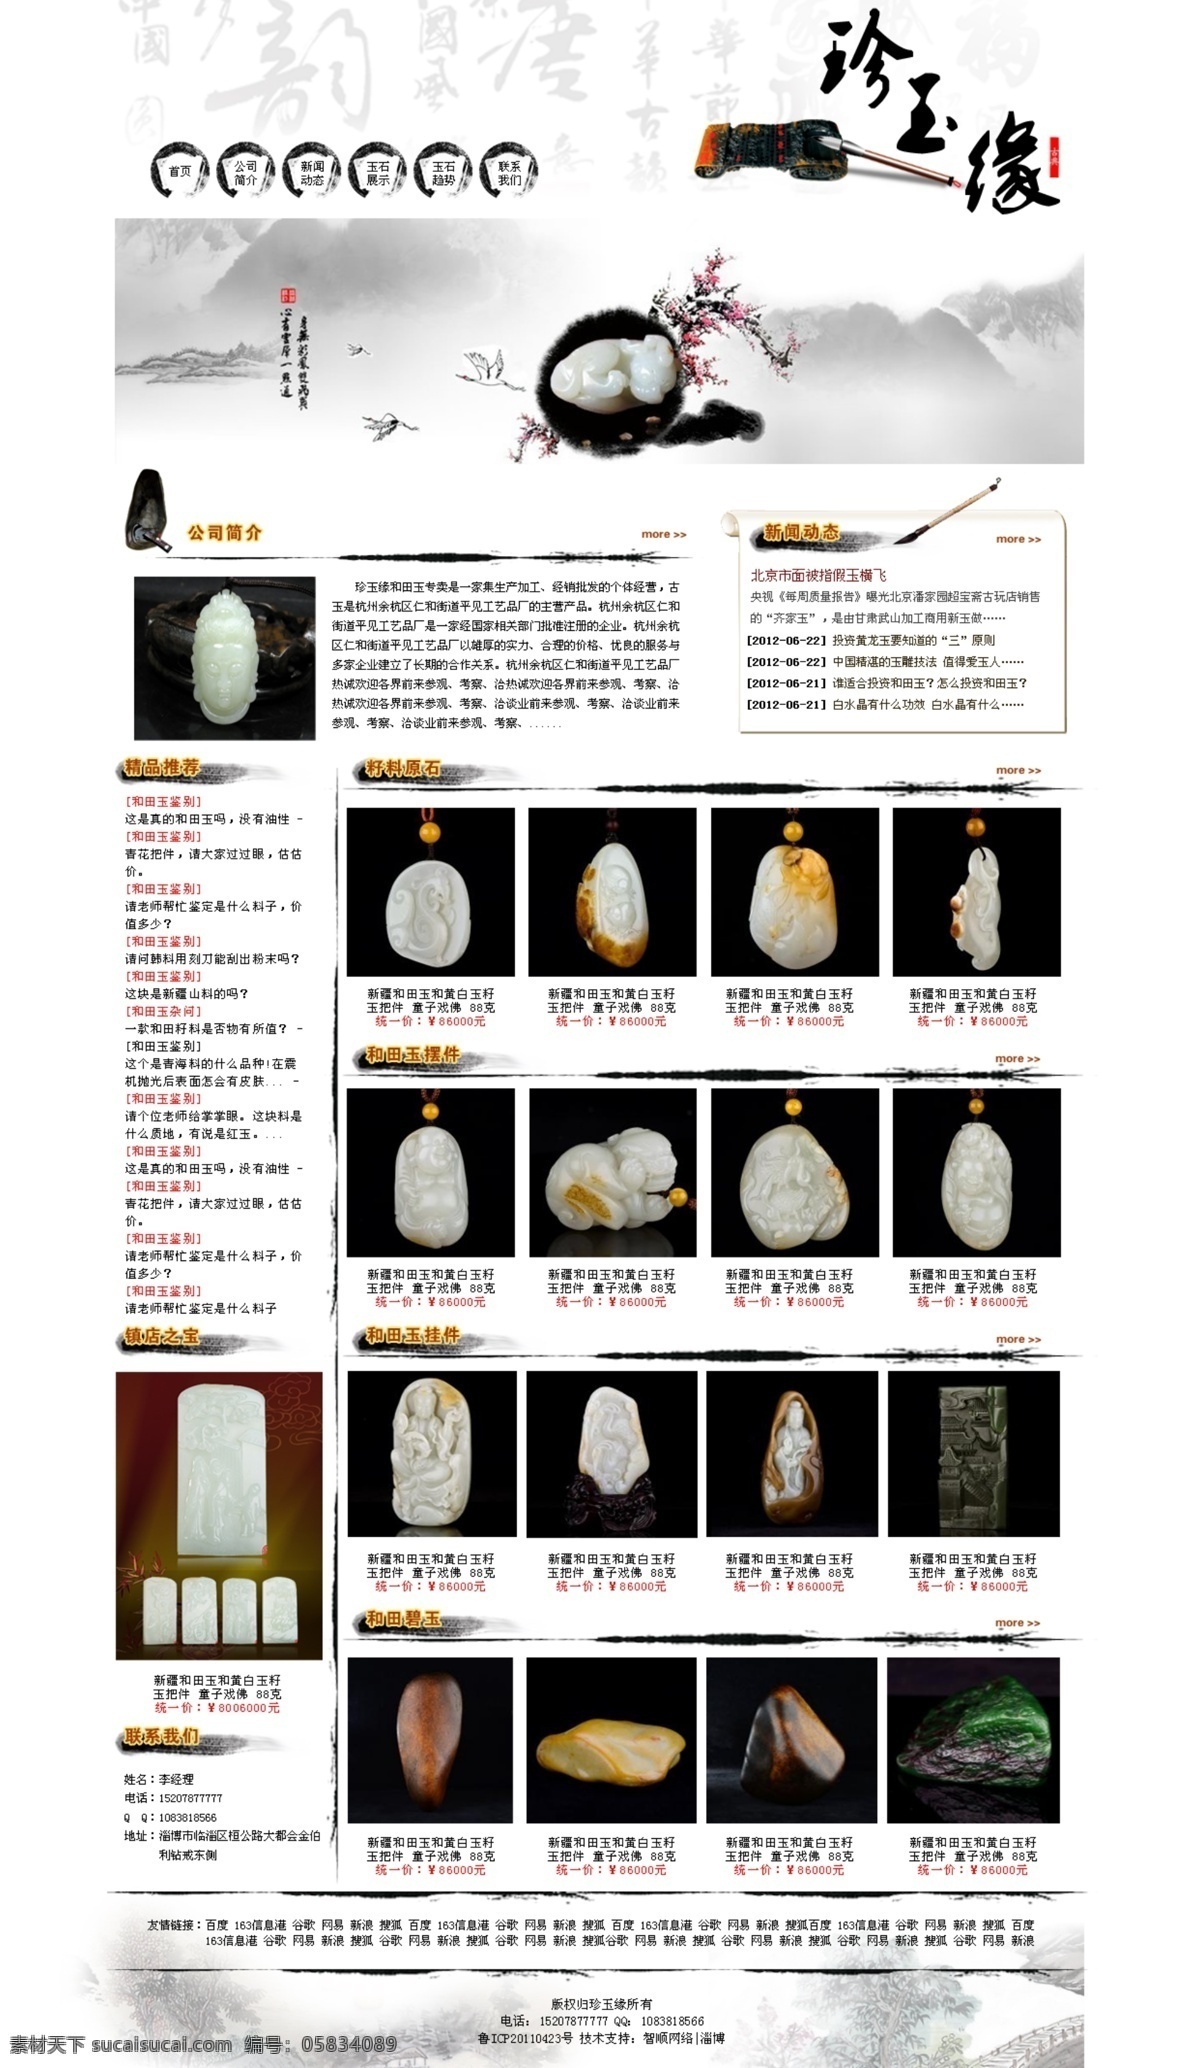 玉器 网站 古 玉器网站 古典网站 水墨 网页设计 网页 古典 中文模板 web 界面设计